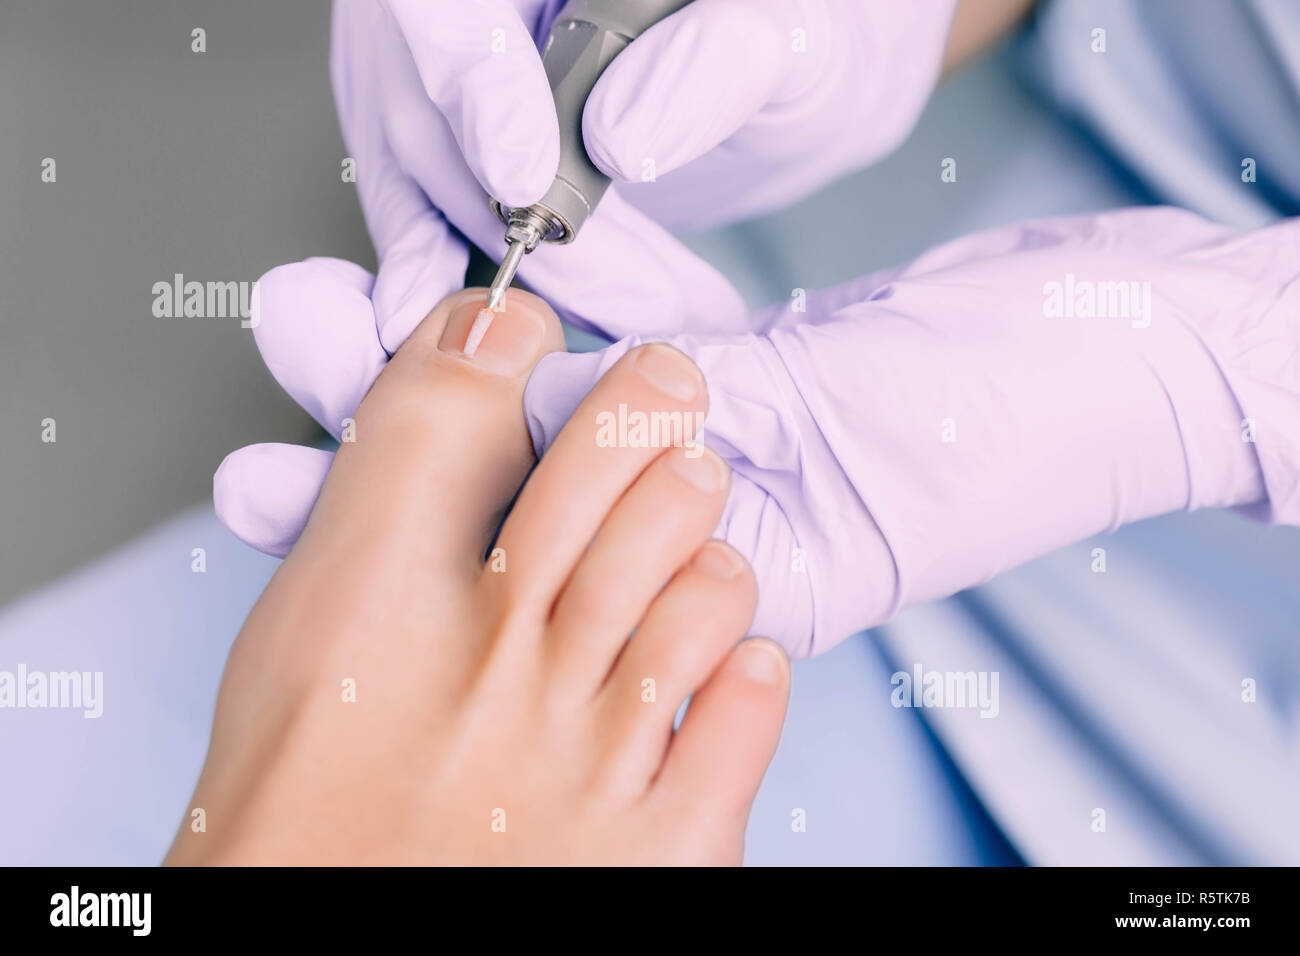 Fußpflege Behandlung von Fuß des Patienten, Pediküre Behandlung Stockfoto